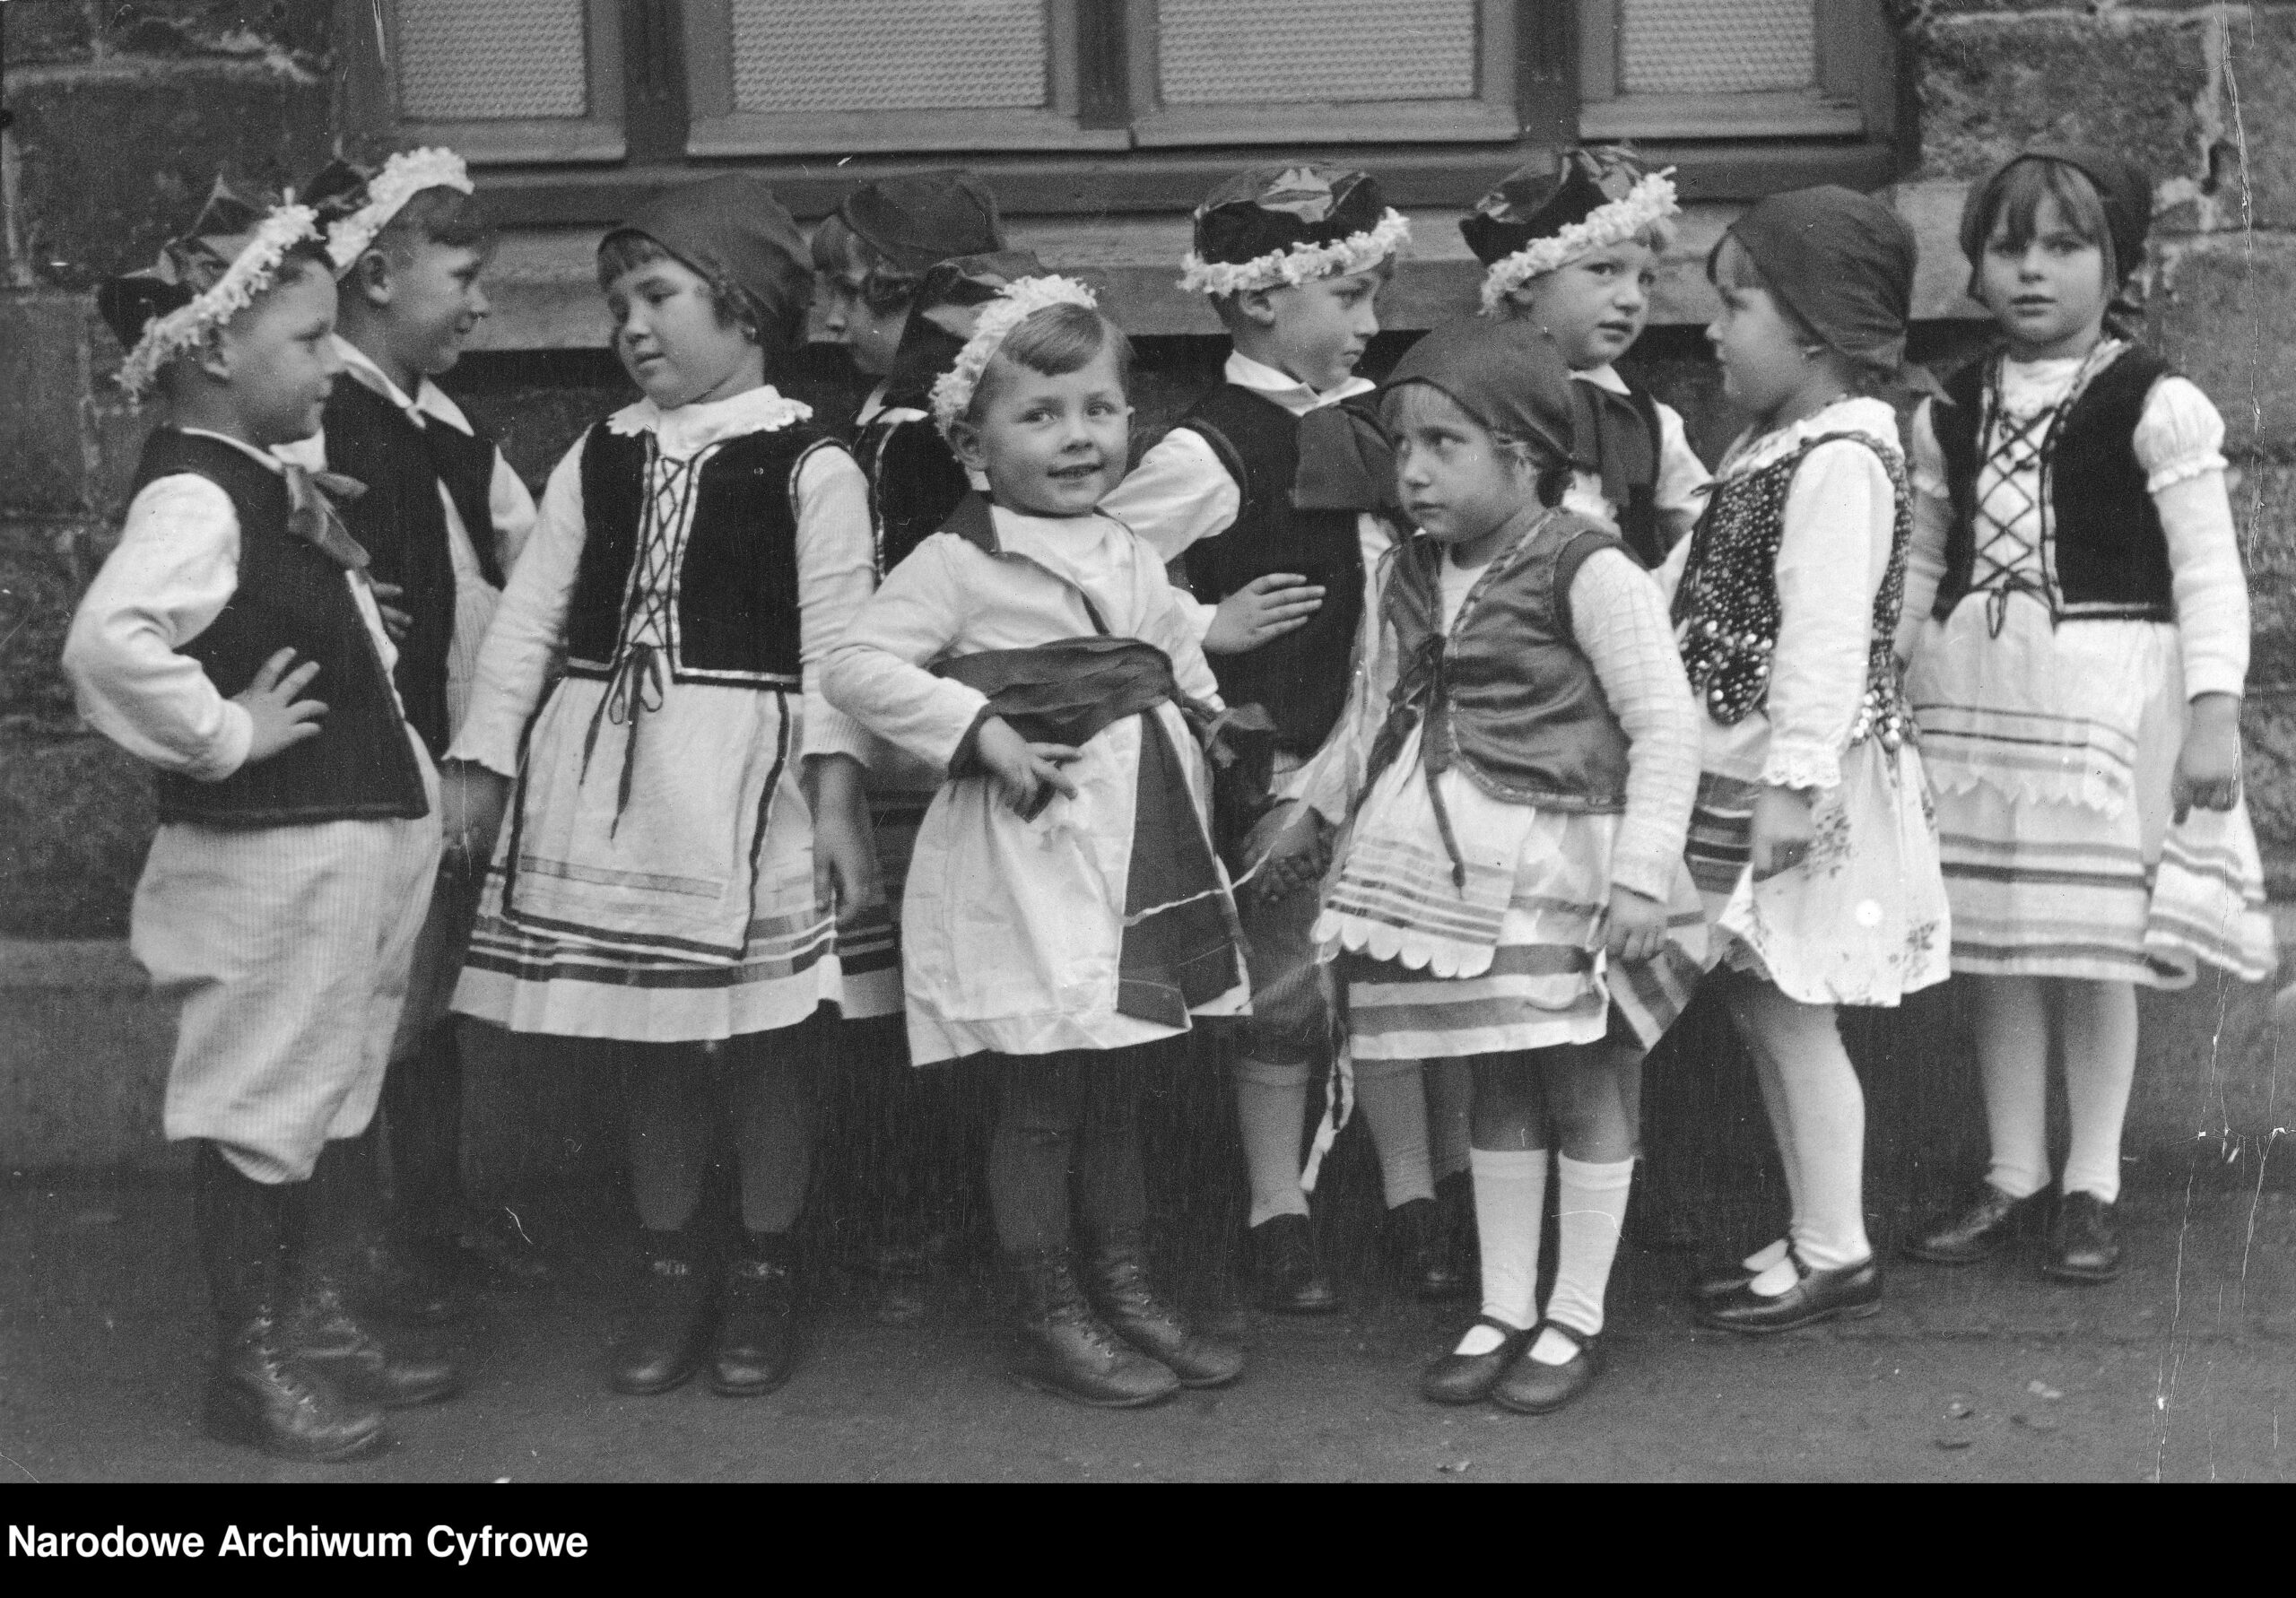 Grupa dzieci w strojach ludowych, 
"Na Szerokim Świecie" nr 8/389 z 1936, Sallaumines (Hauts-de-France, Pas-de-Calais), fot. Narodowe Archiwum Cyfrowe